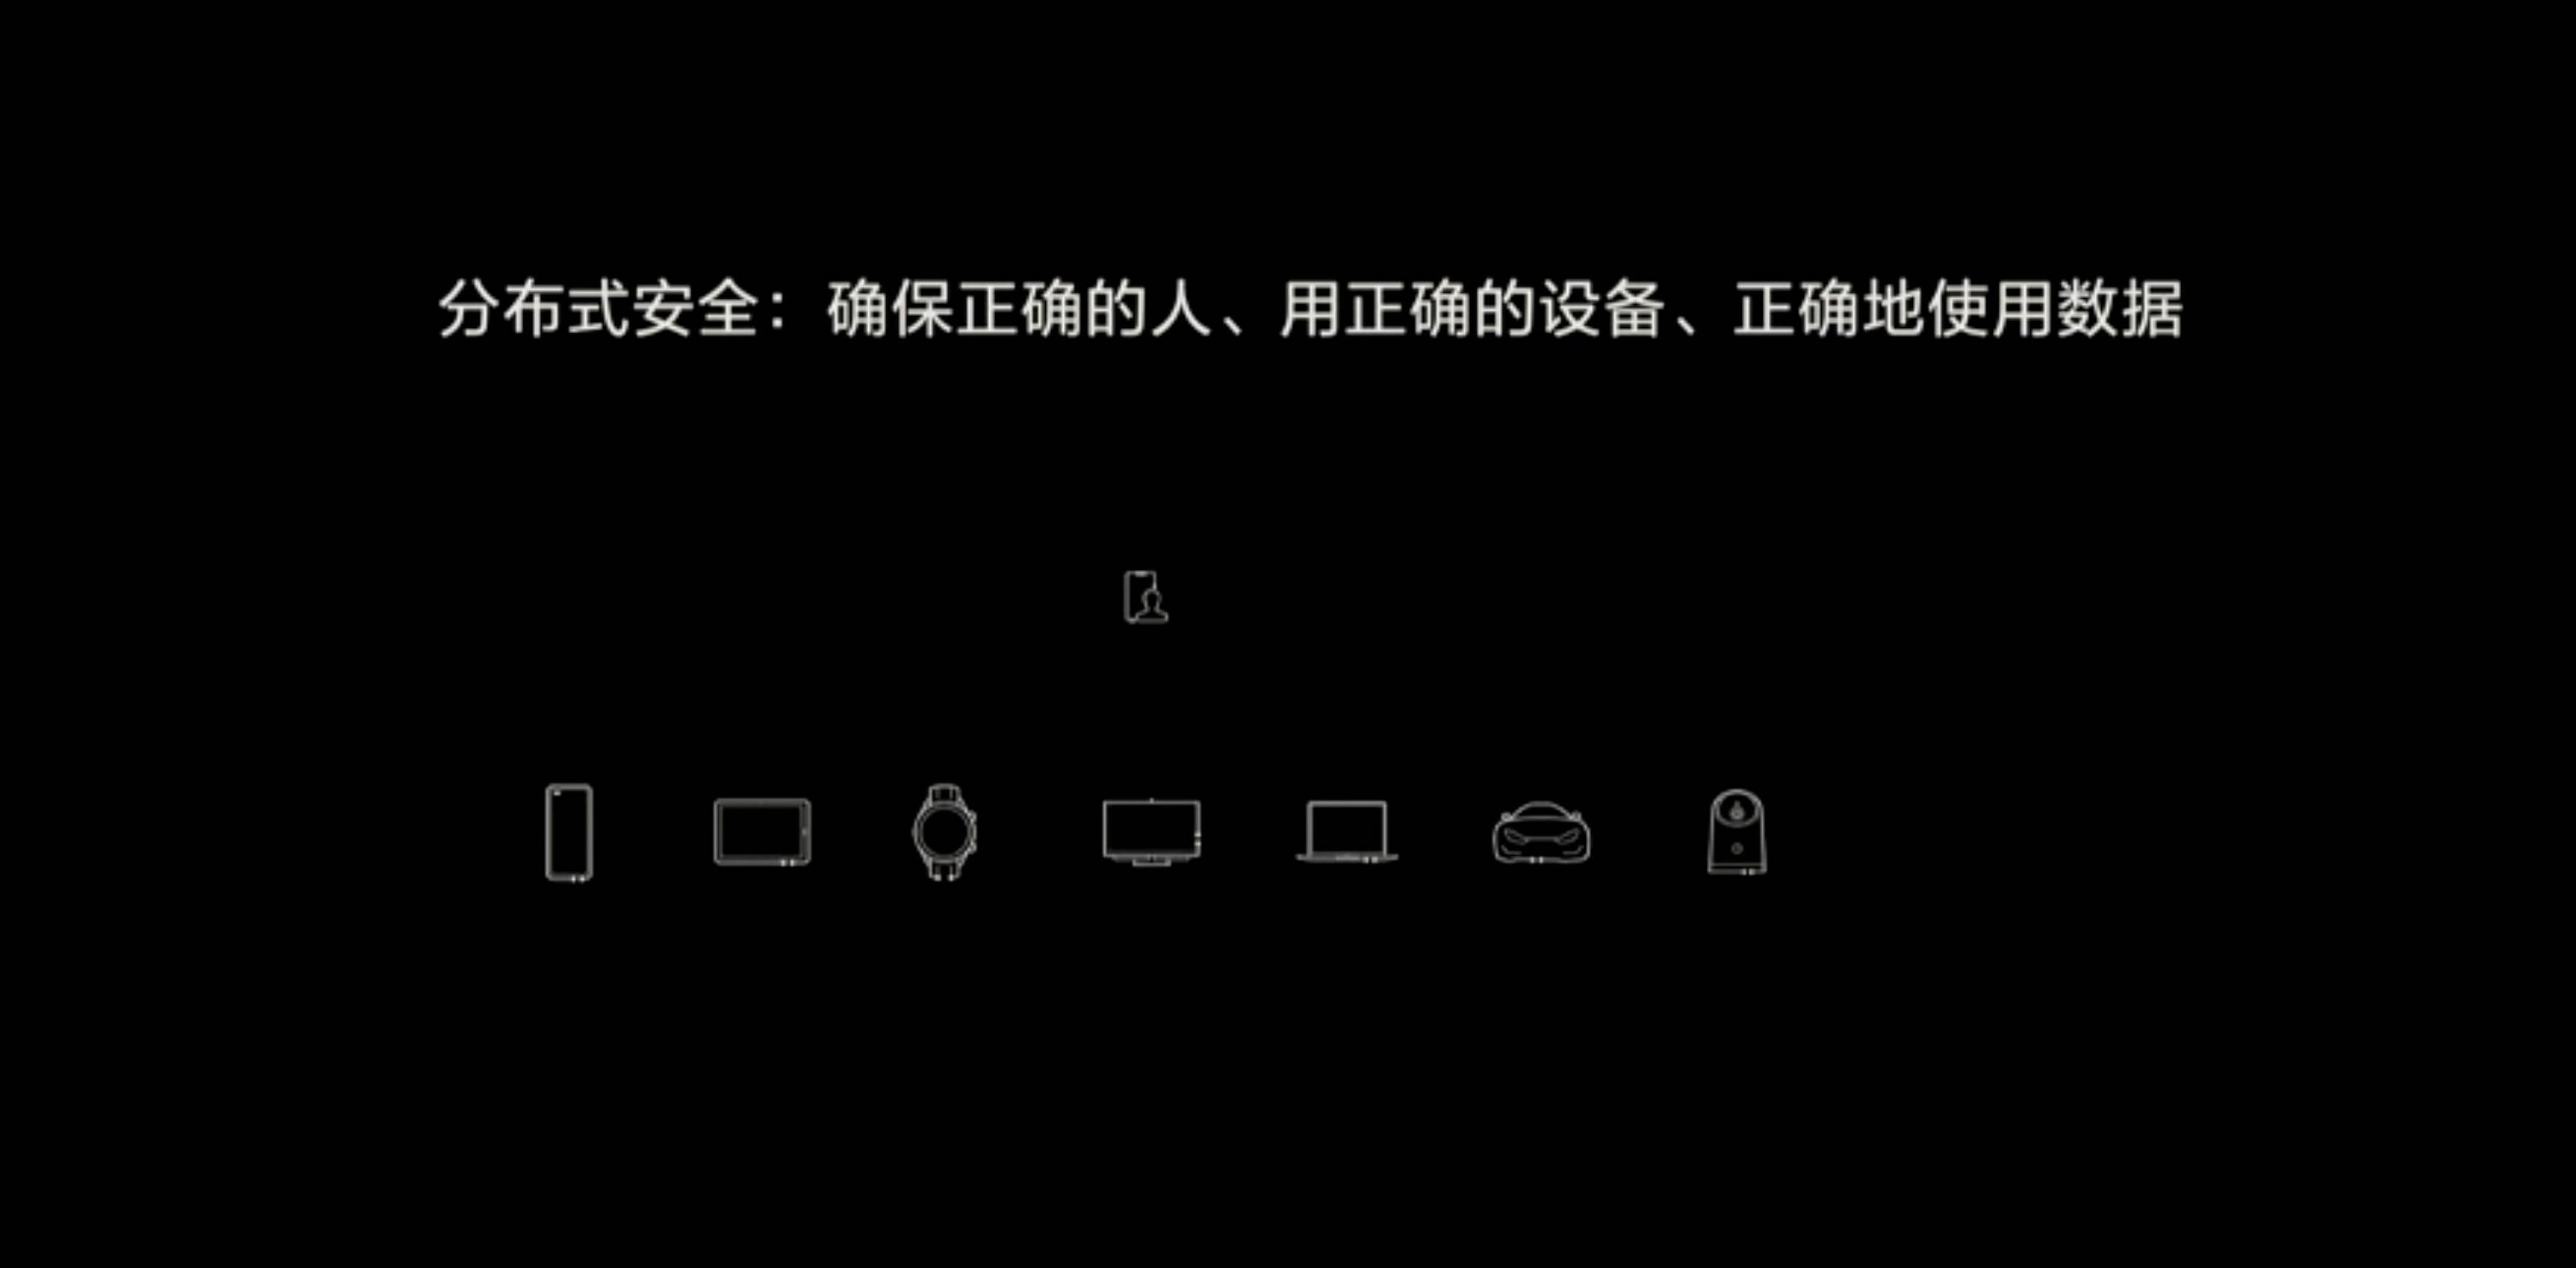 HDC 2020 PPT 52 - Huawei Hongmeng 2.0 è qui! Se non esegui un secondo Android, sarai sul tuo telefono entro la fine dell’anno